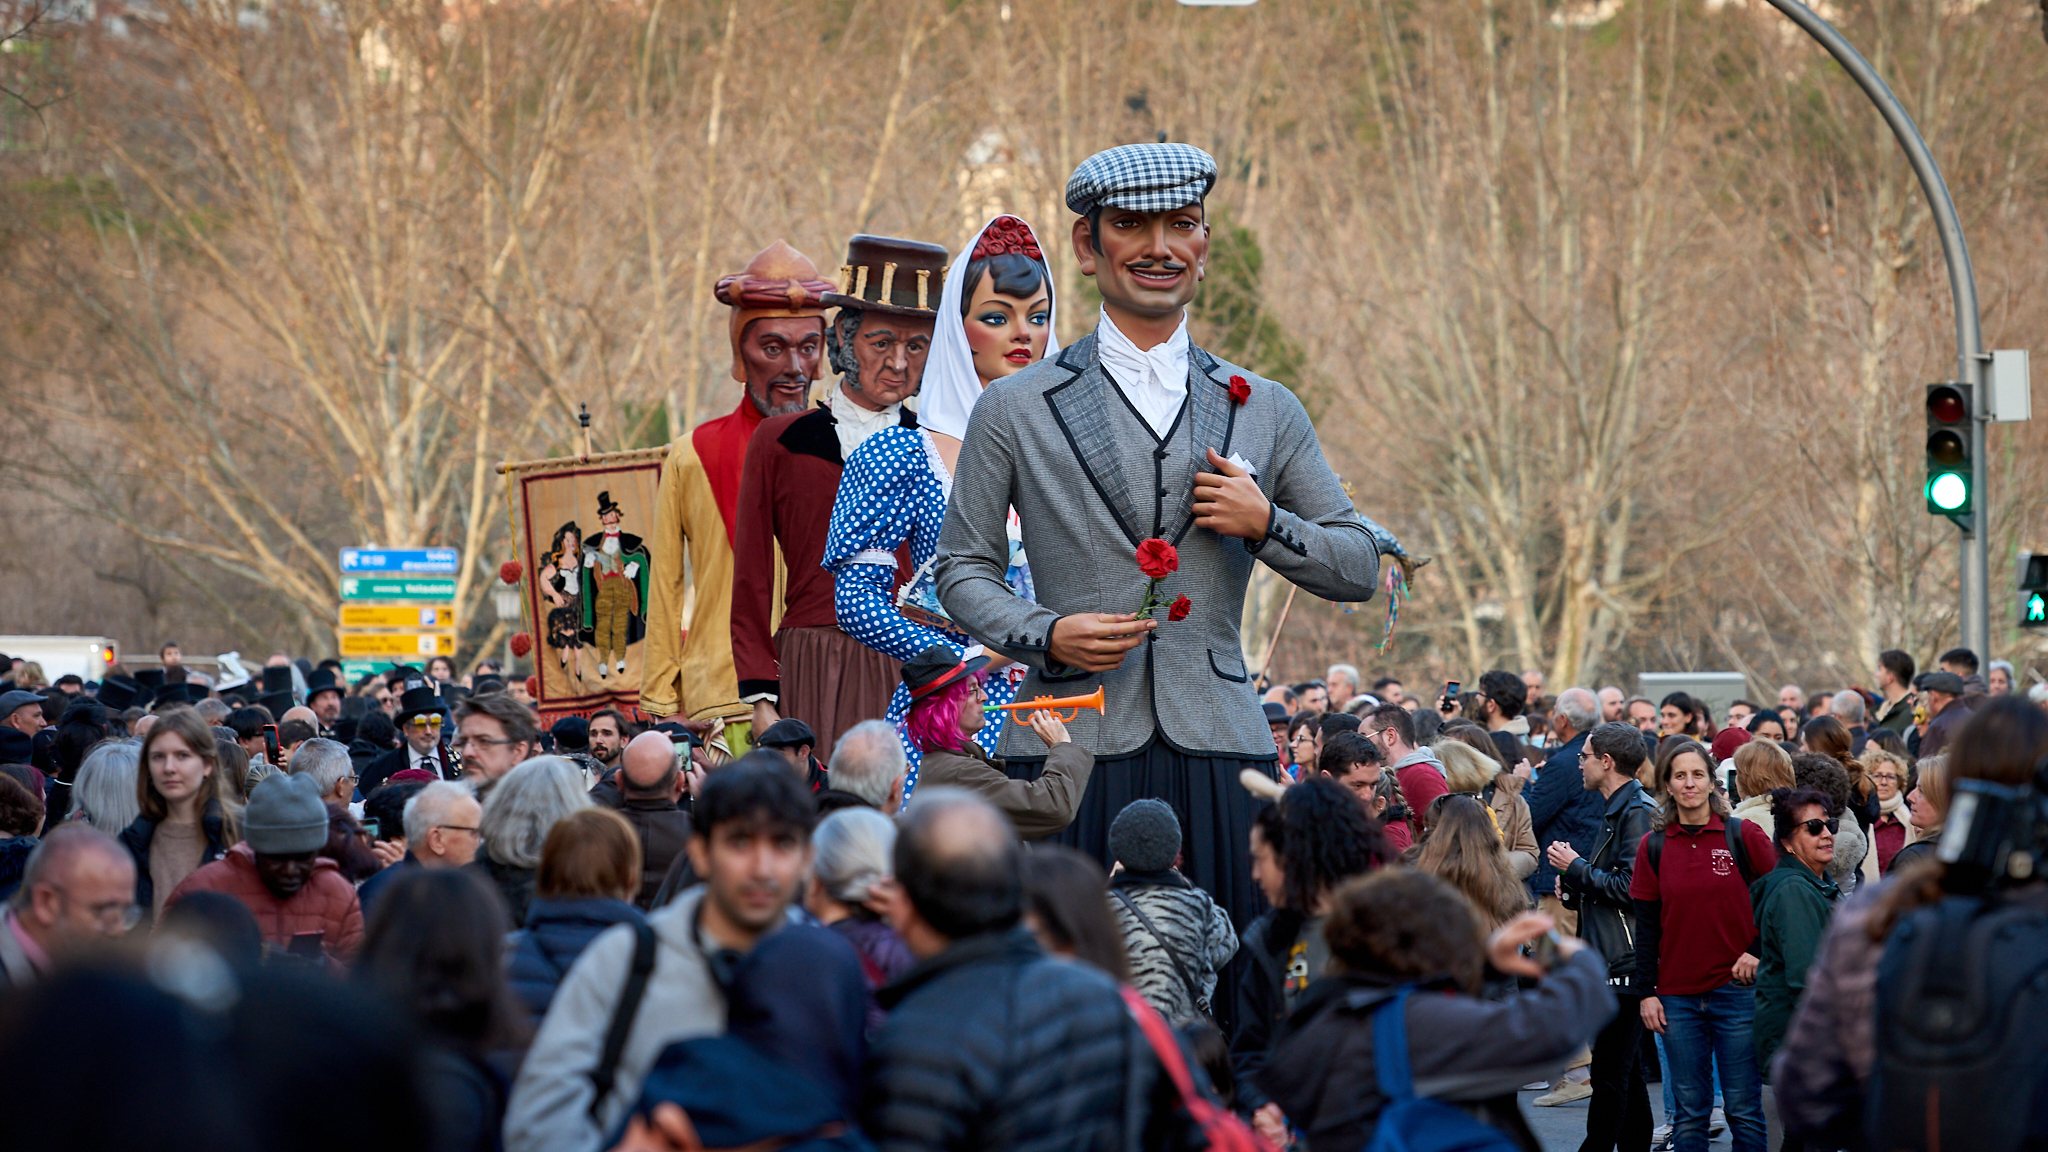 Gigantes y cabezudos en el Carnaval de Madrid.